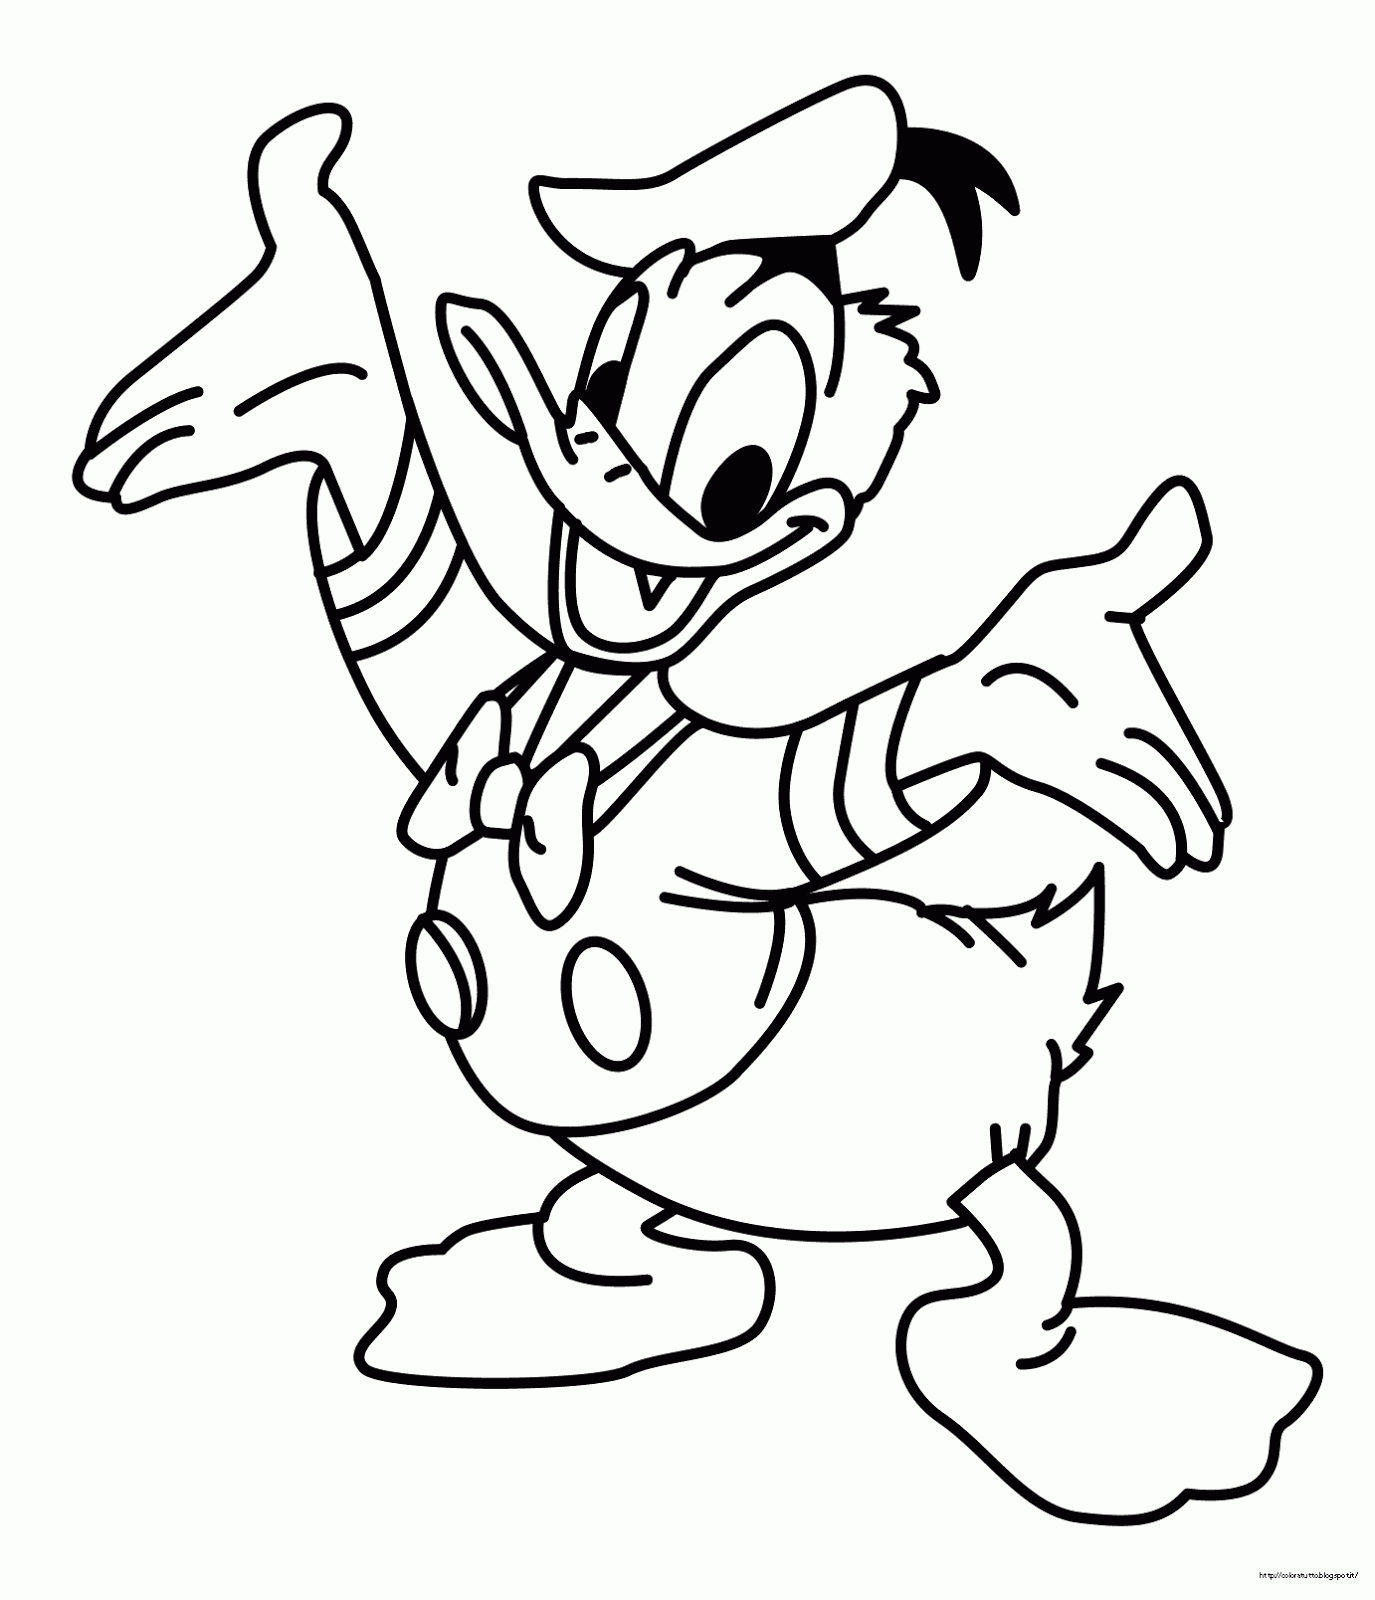 Proseguono i disegni da colorare dedicati a Paperino Donald Duck coloring page